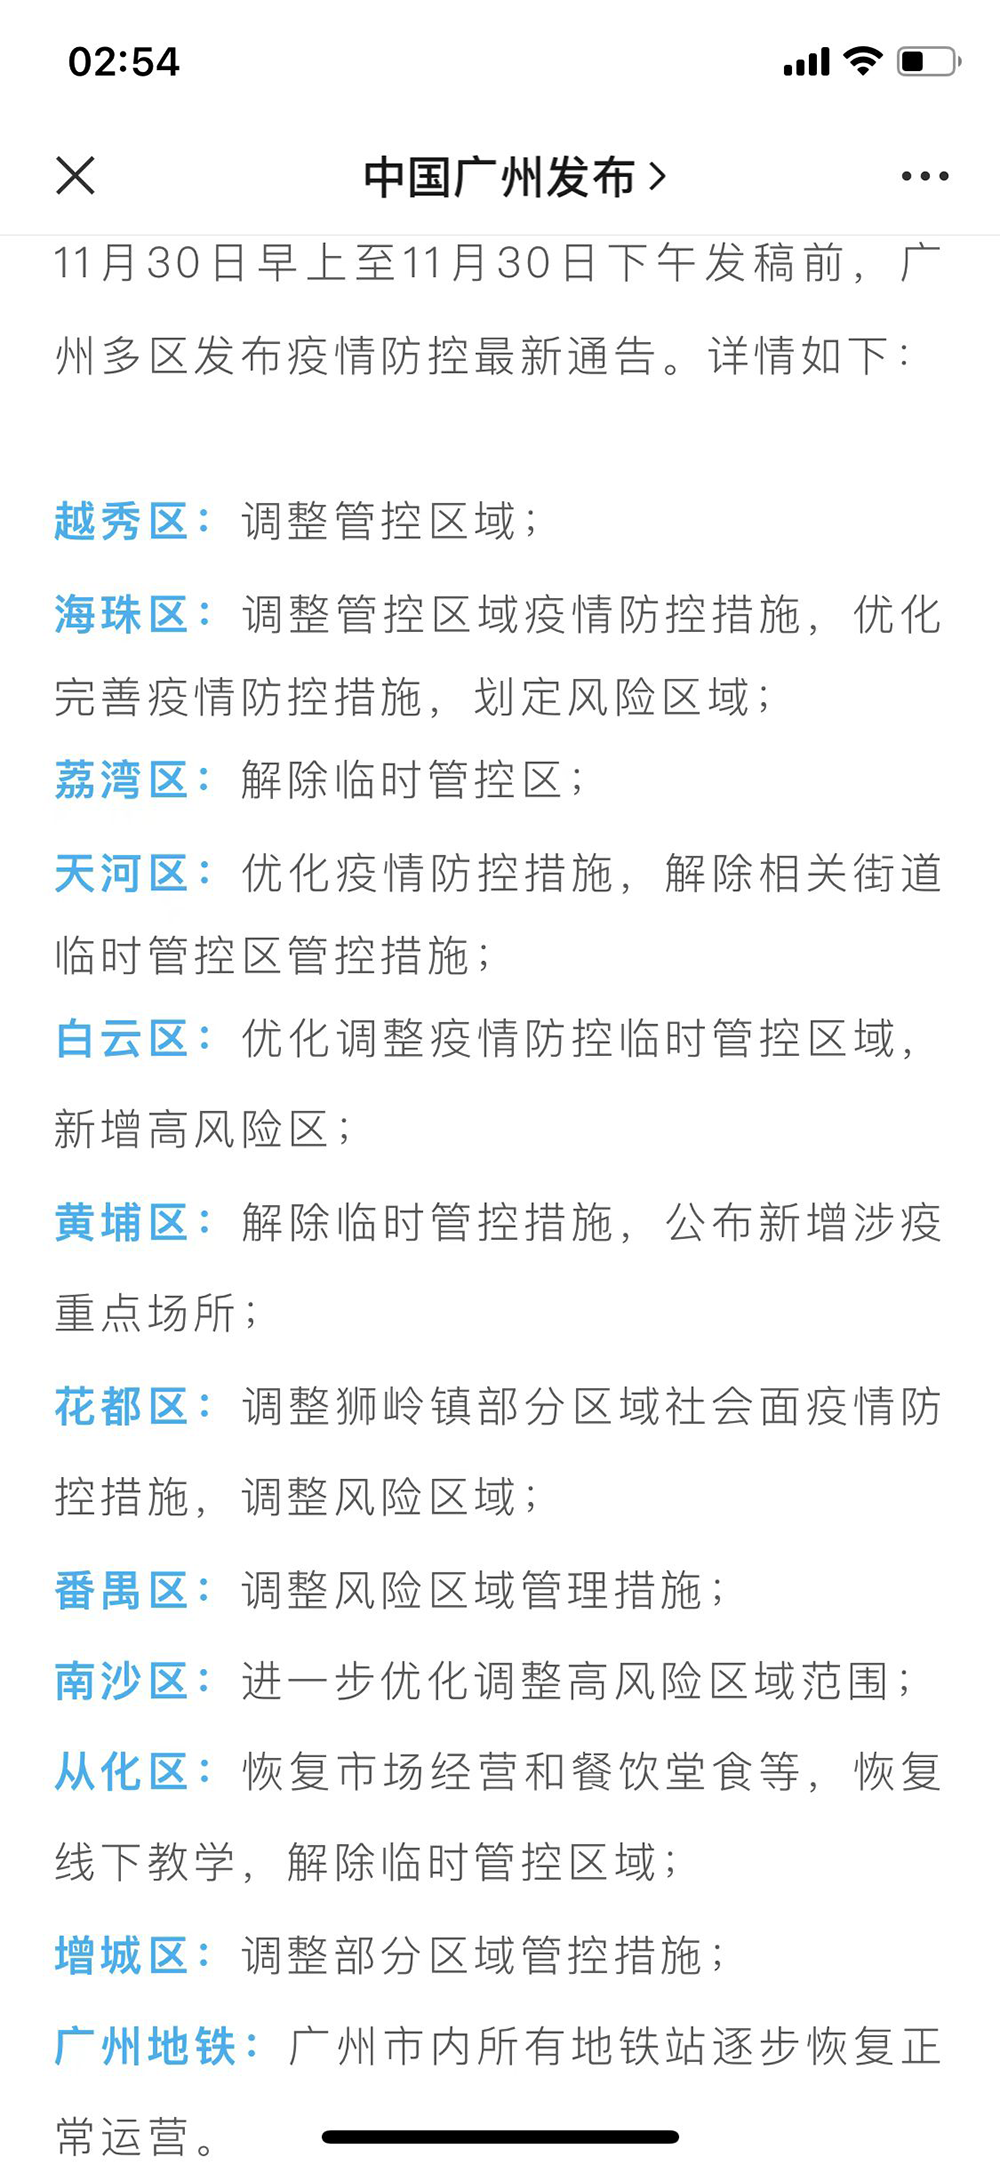 11月30日，广州11个区先后发布通告称，调整管控区域，优化完善疫情防控措施。微信公众号“中国广州发布”截图